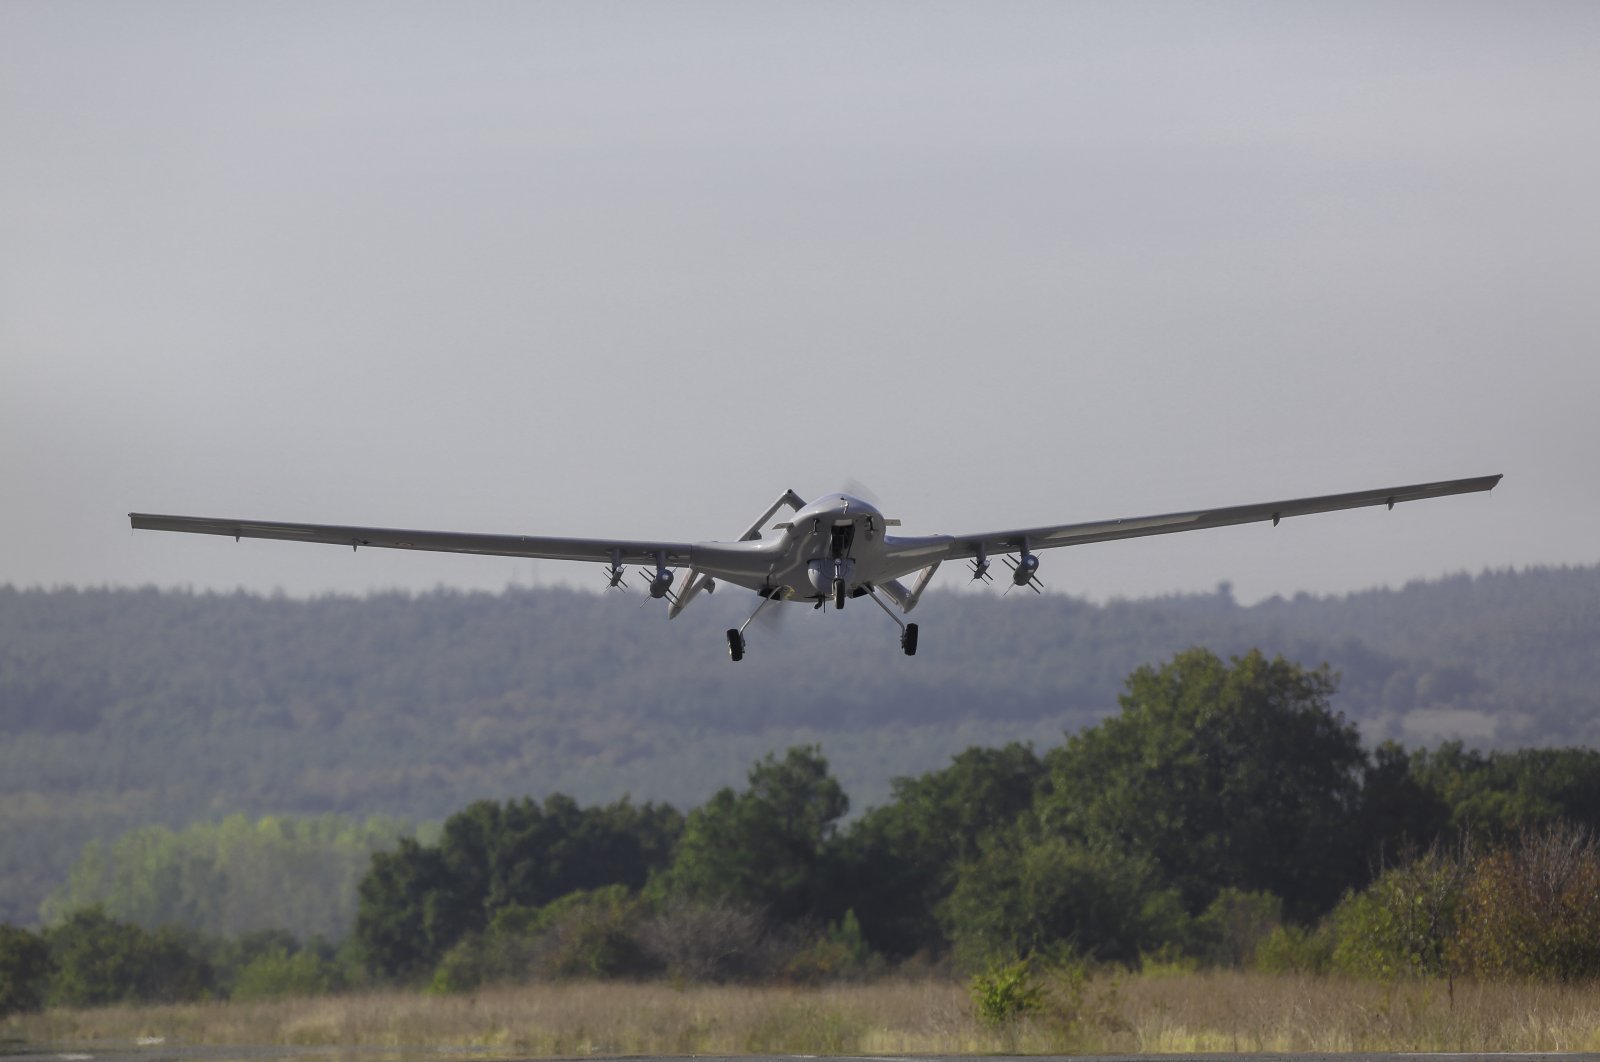 Irak mungkin menjadi tetangga kedua yang membeli drone tempur Turki